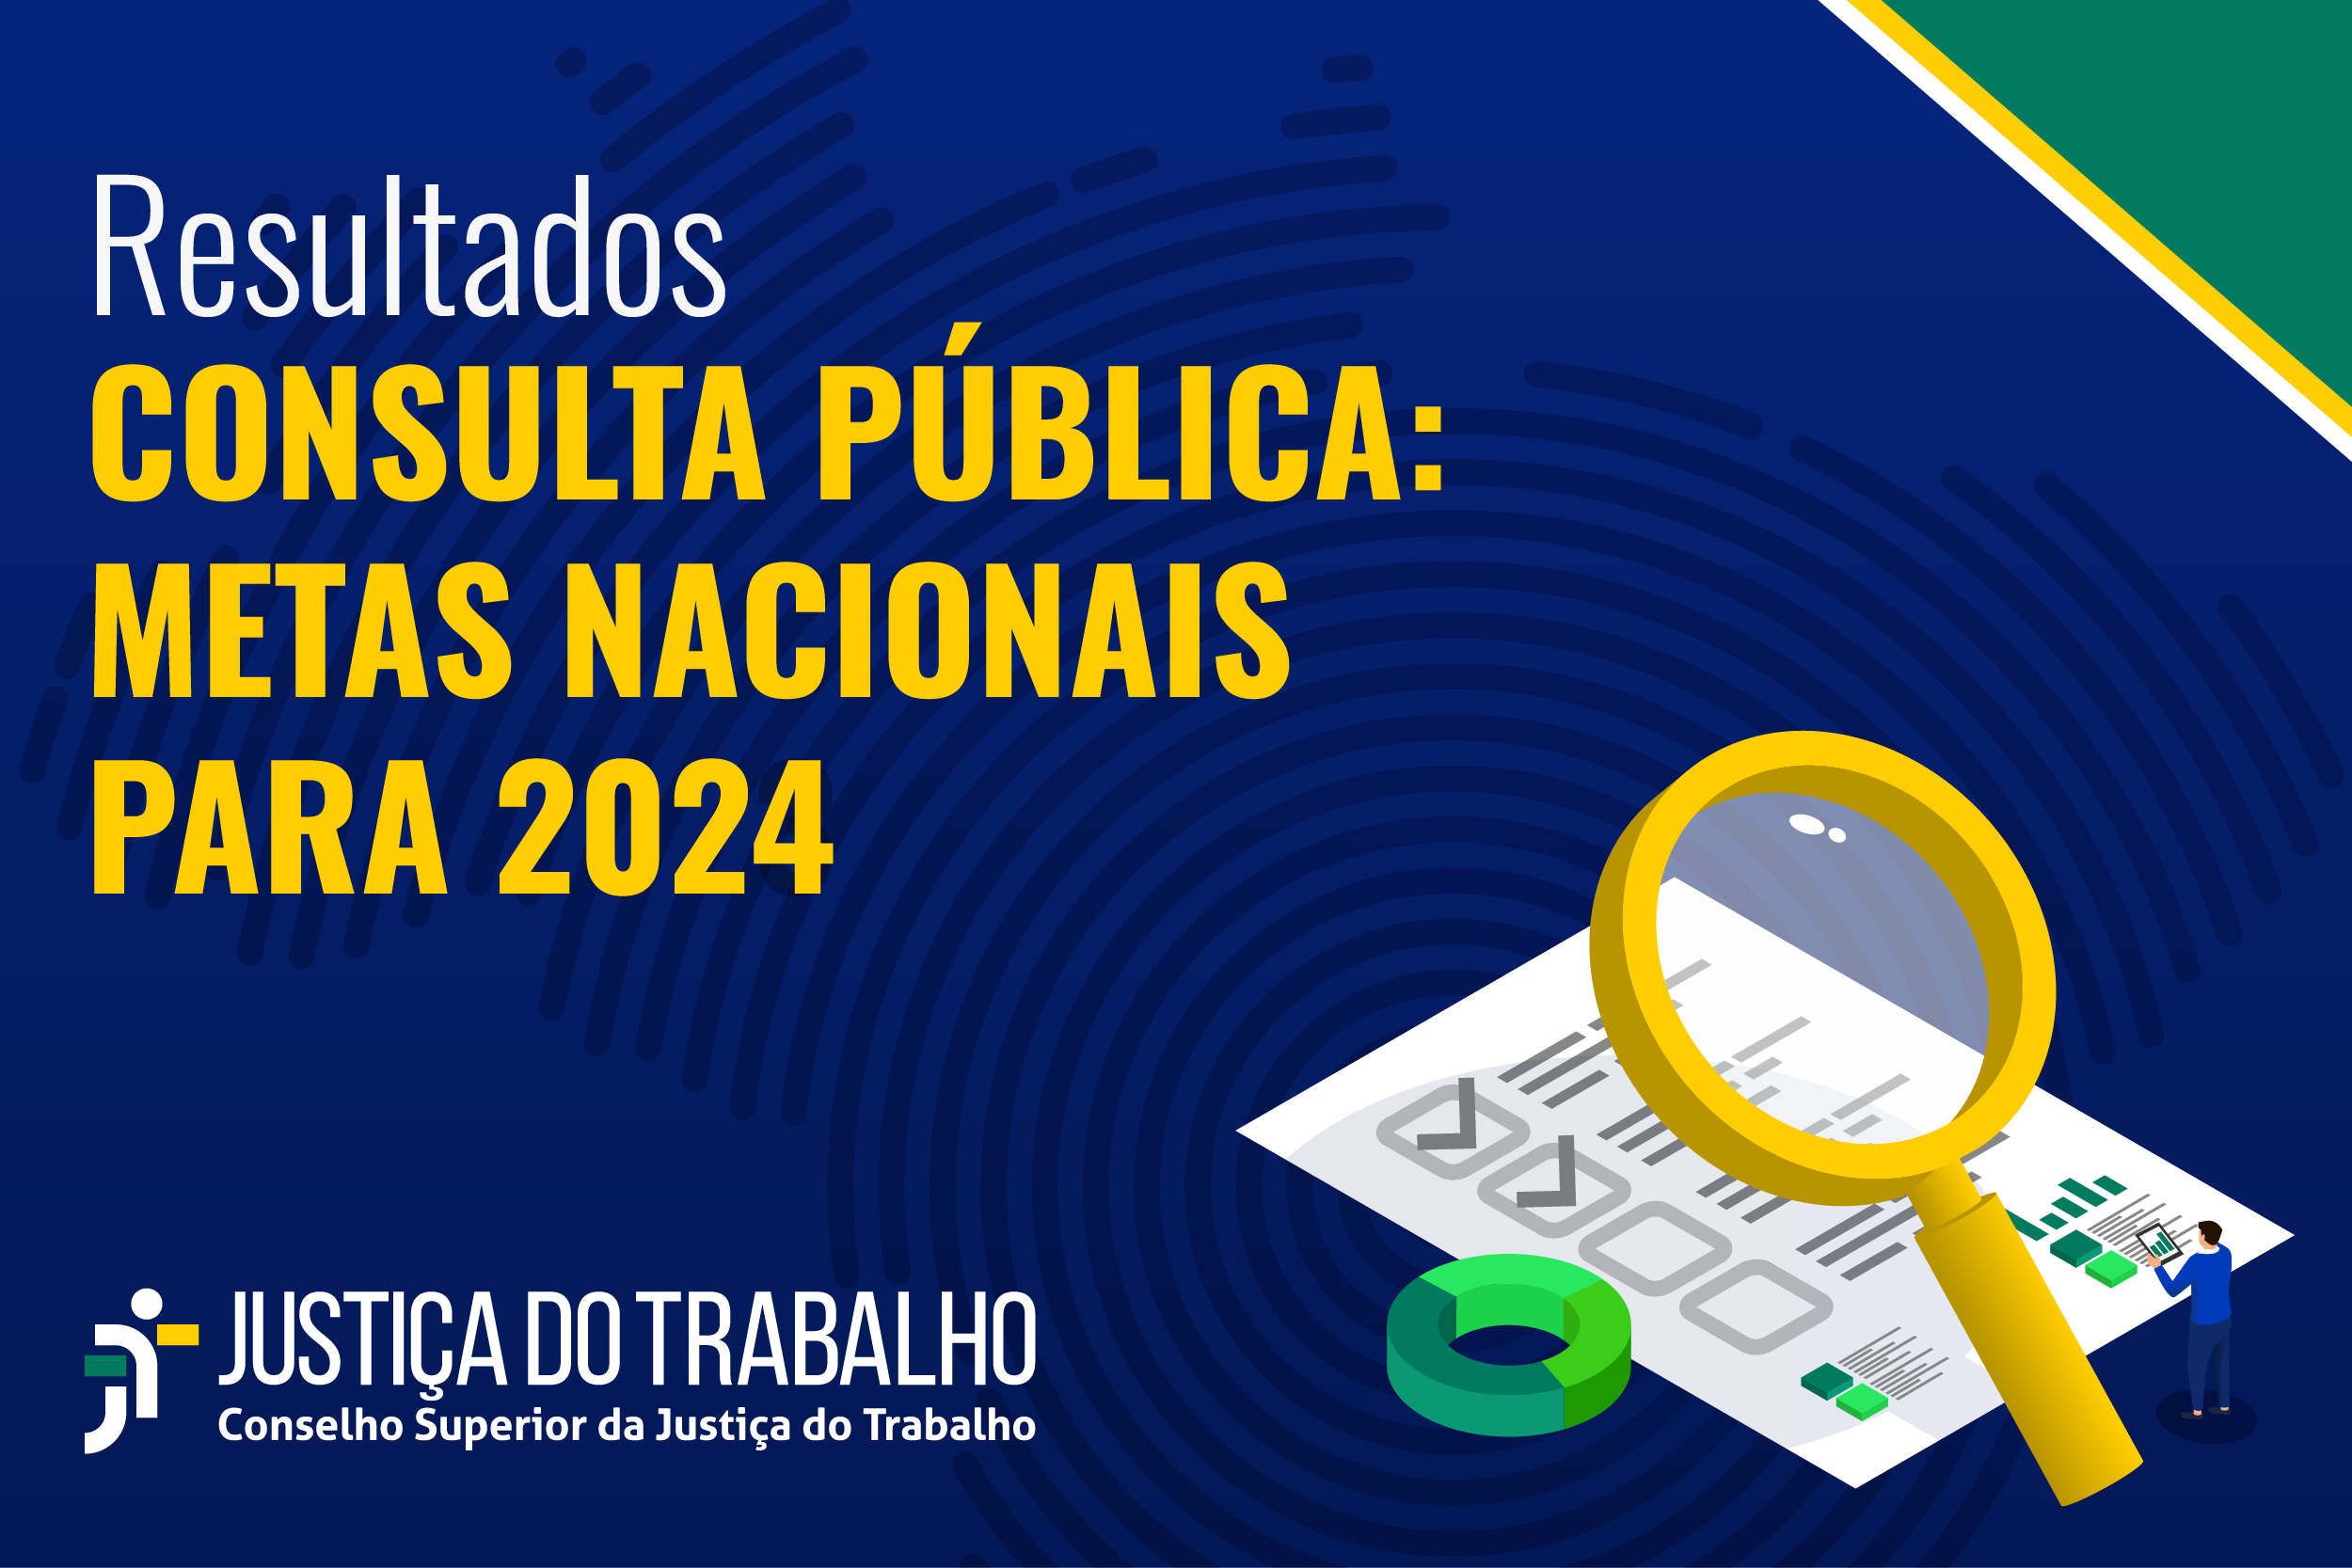 Confira os resultados da Consulta Pública da Justiça do Trabalho para as metas nacionais 2024 